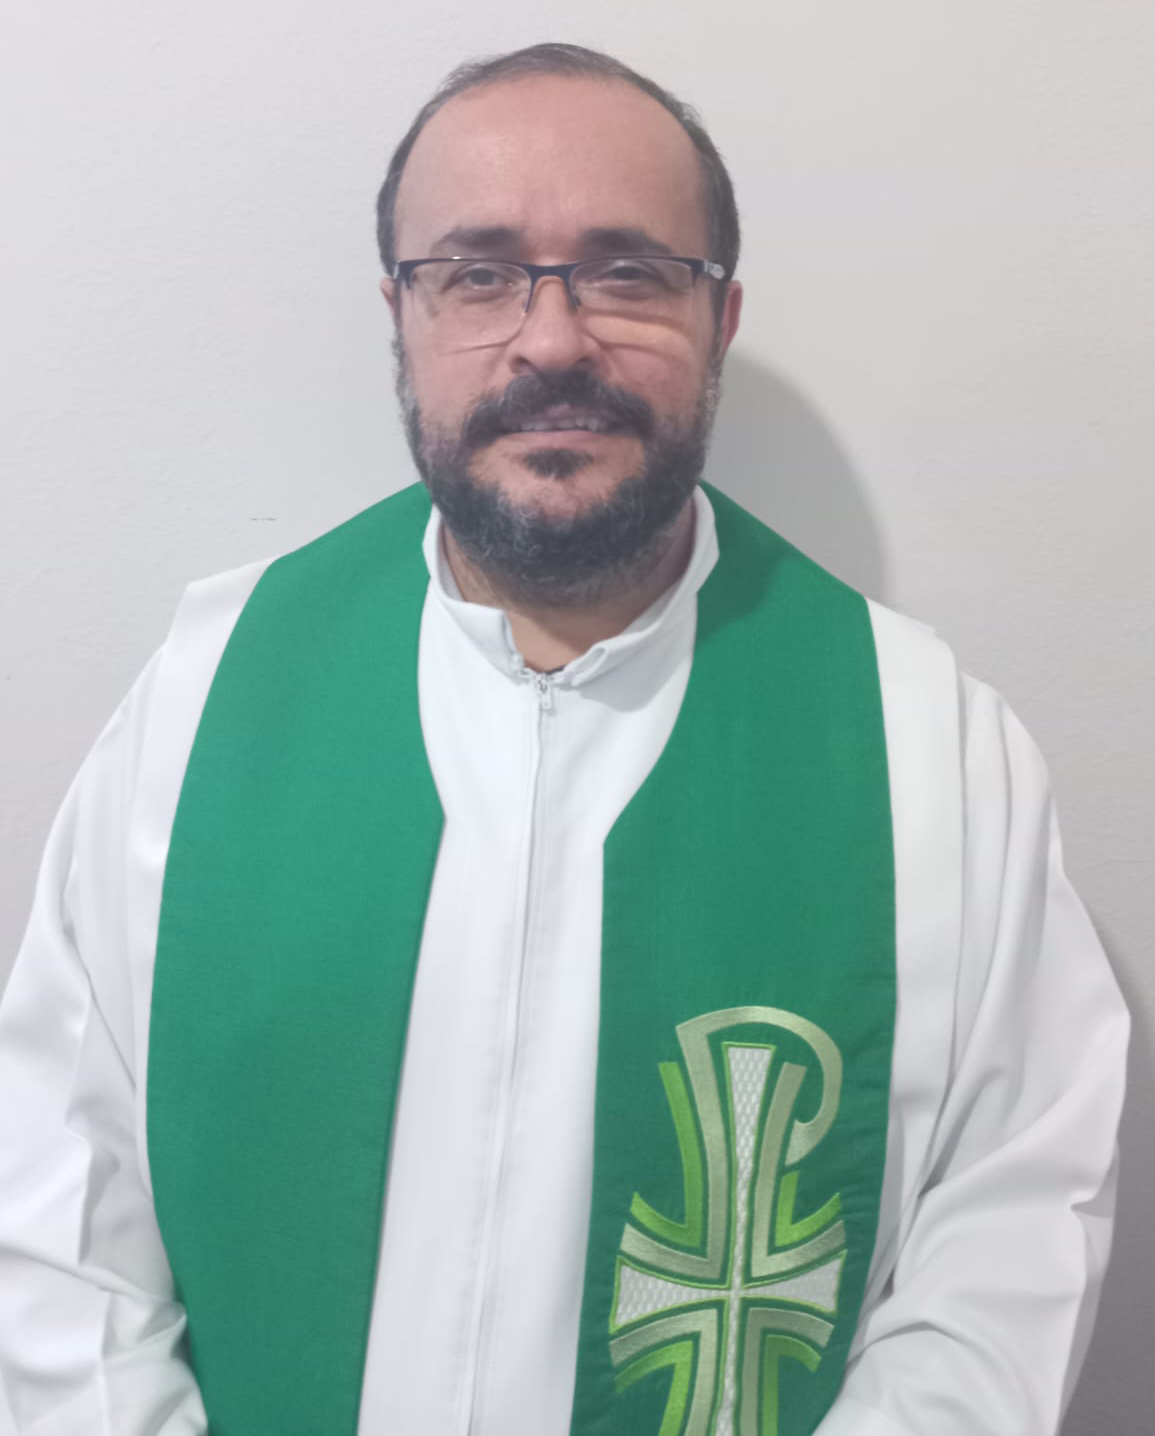 Pe. José Antônio,CJS, é o novo pároco no Rosário